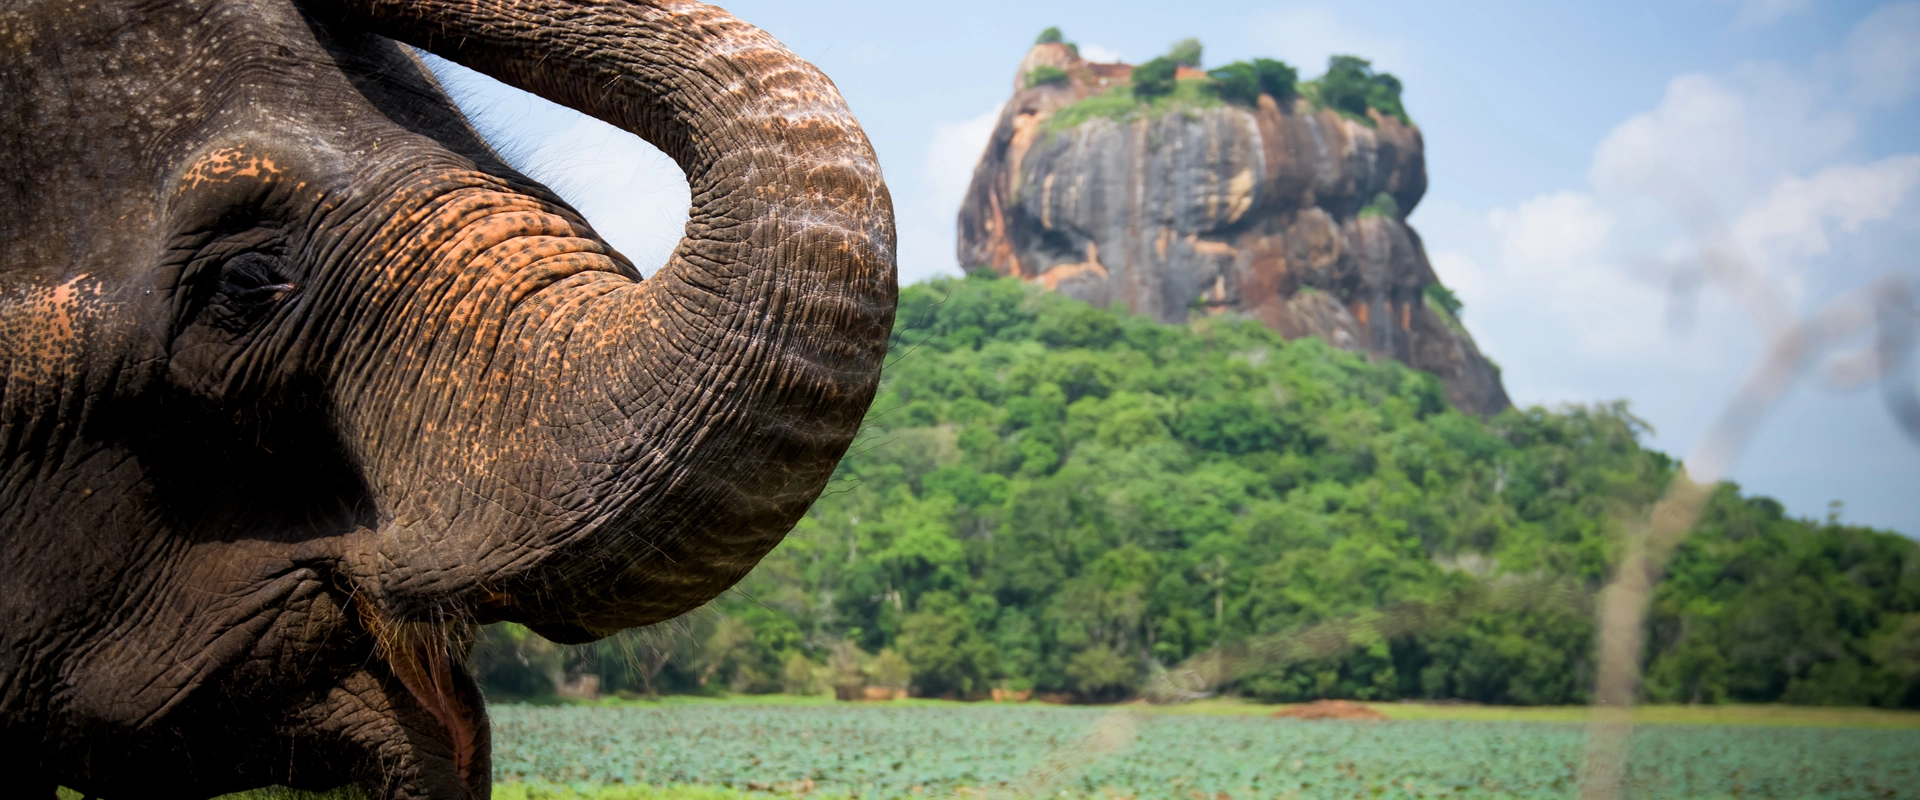 Sri Lanka en moto éléphant et rocher lion sigiriya